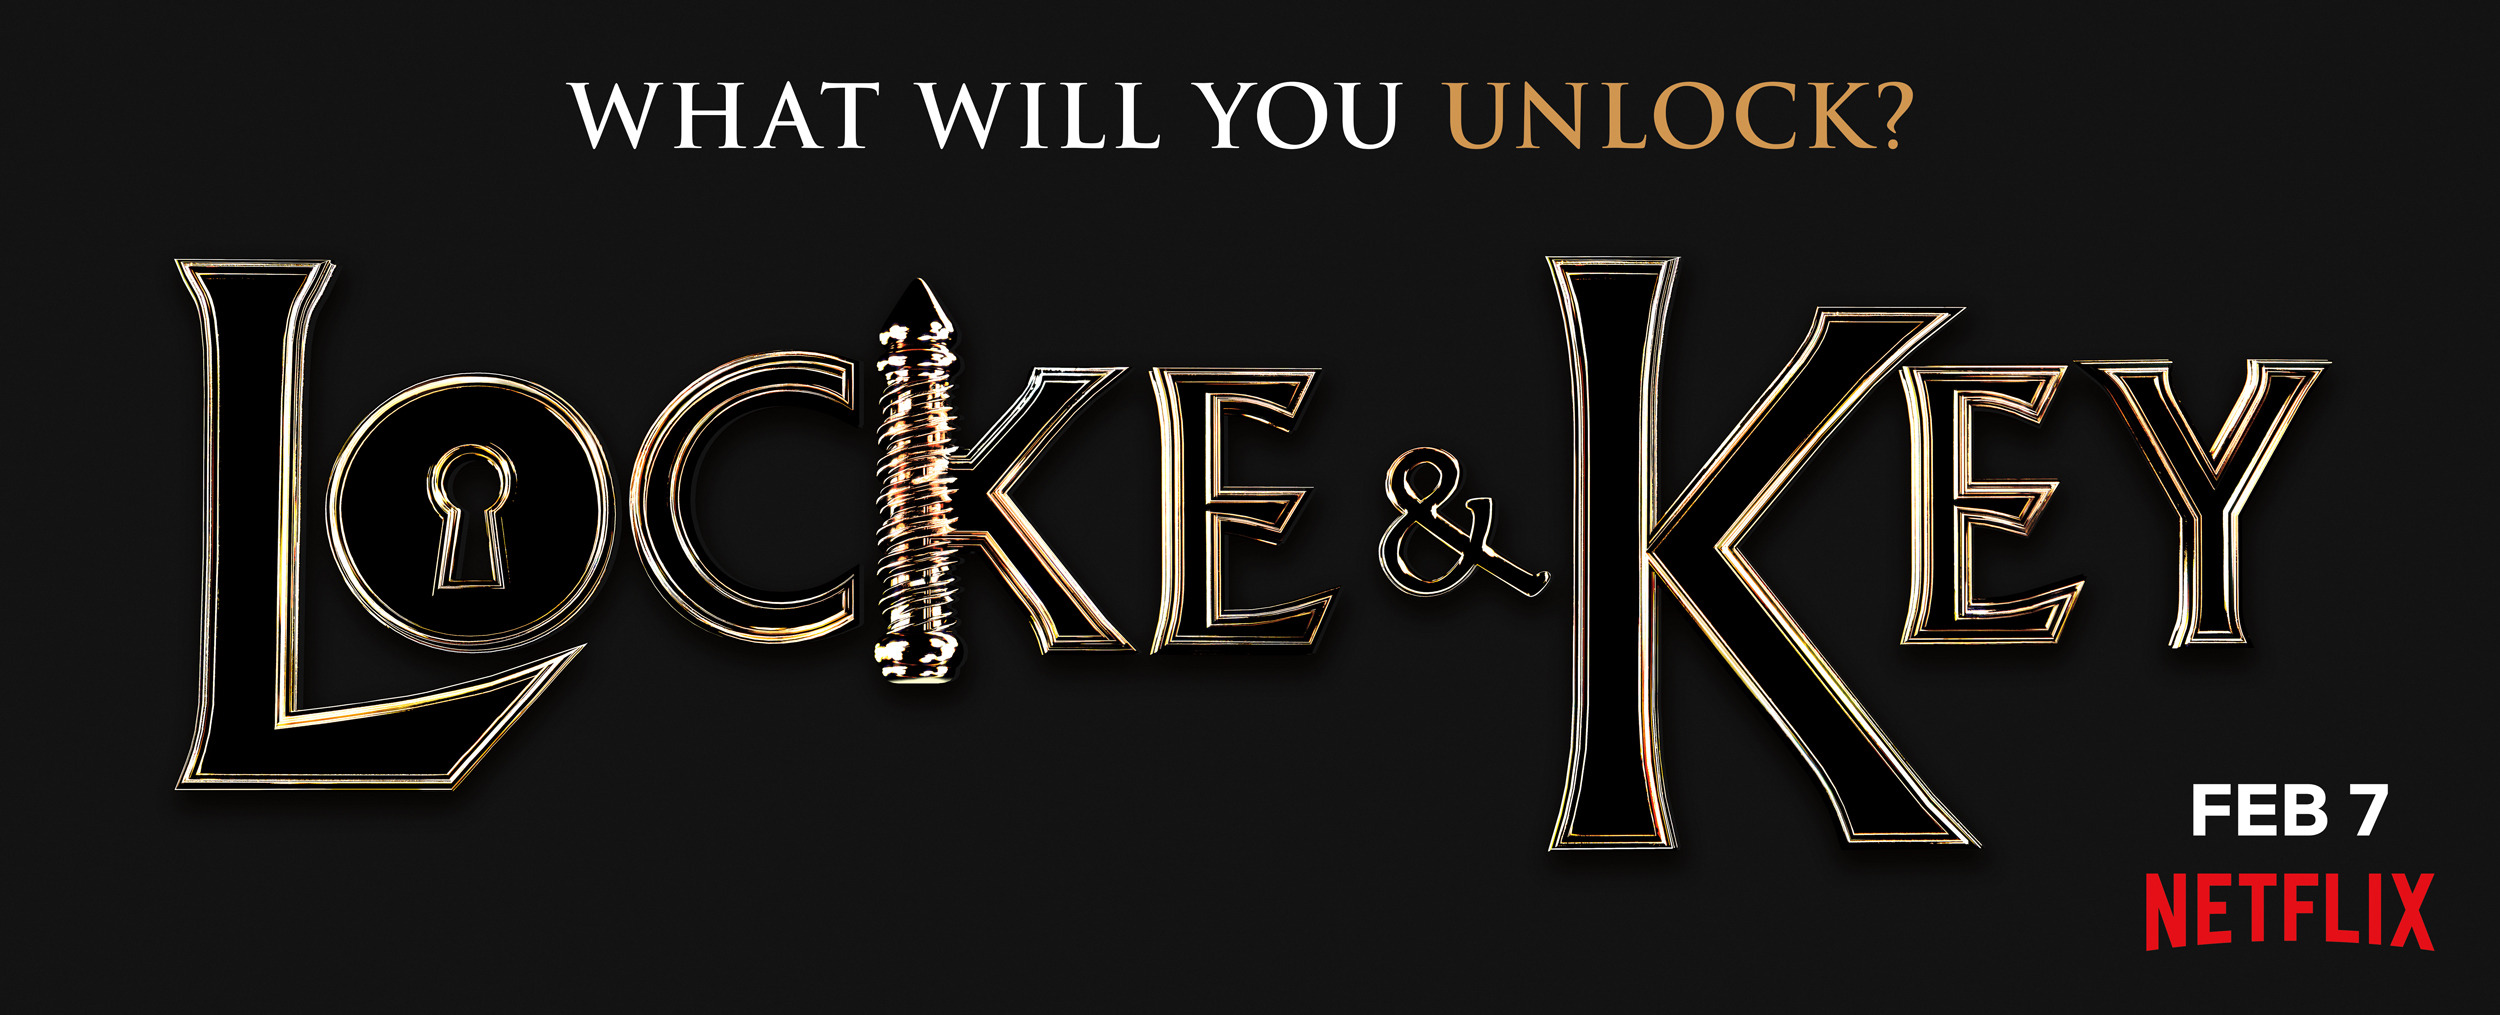 Mega Sized Movie Poster Image for Locke & Key (#13 of 16)